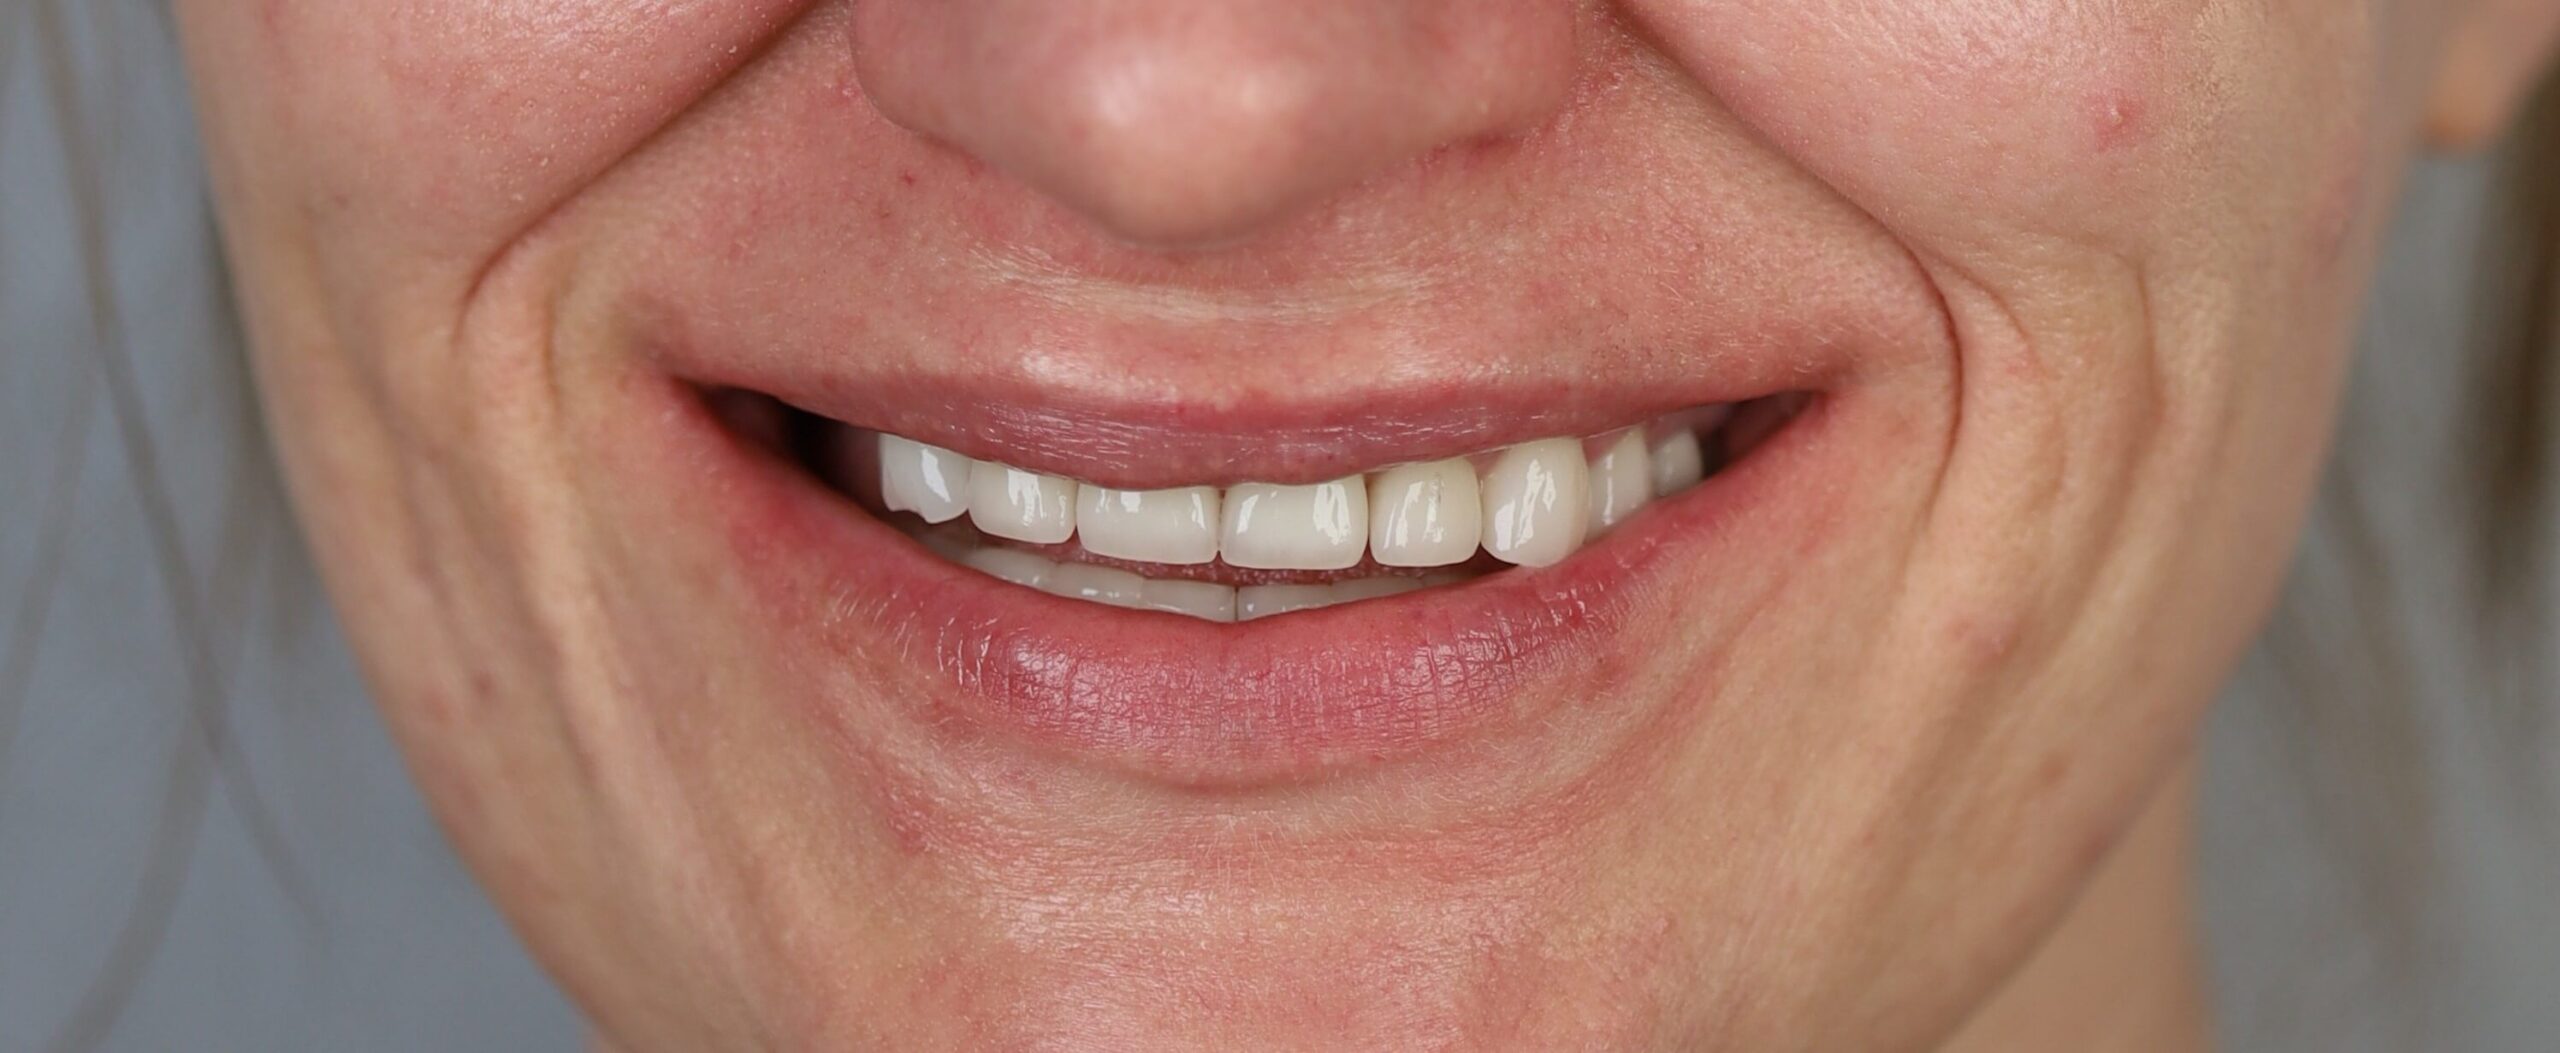 projektowanie uśmiechu - przybliżenie uśmiechu - wiedza - blog - klinika stomatologiczna Poznań Materna Dental